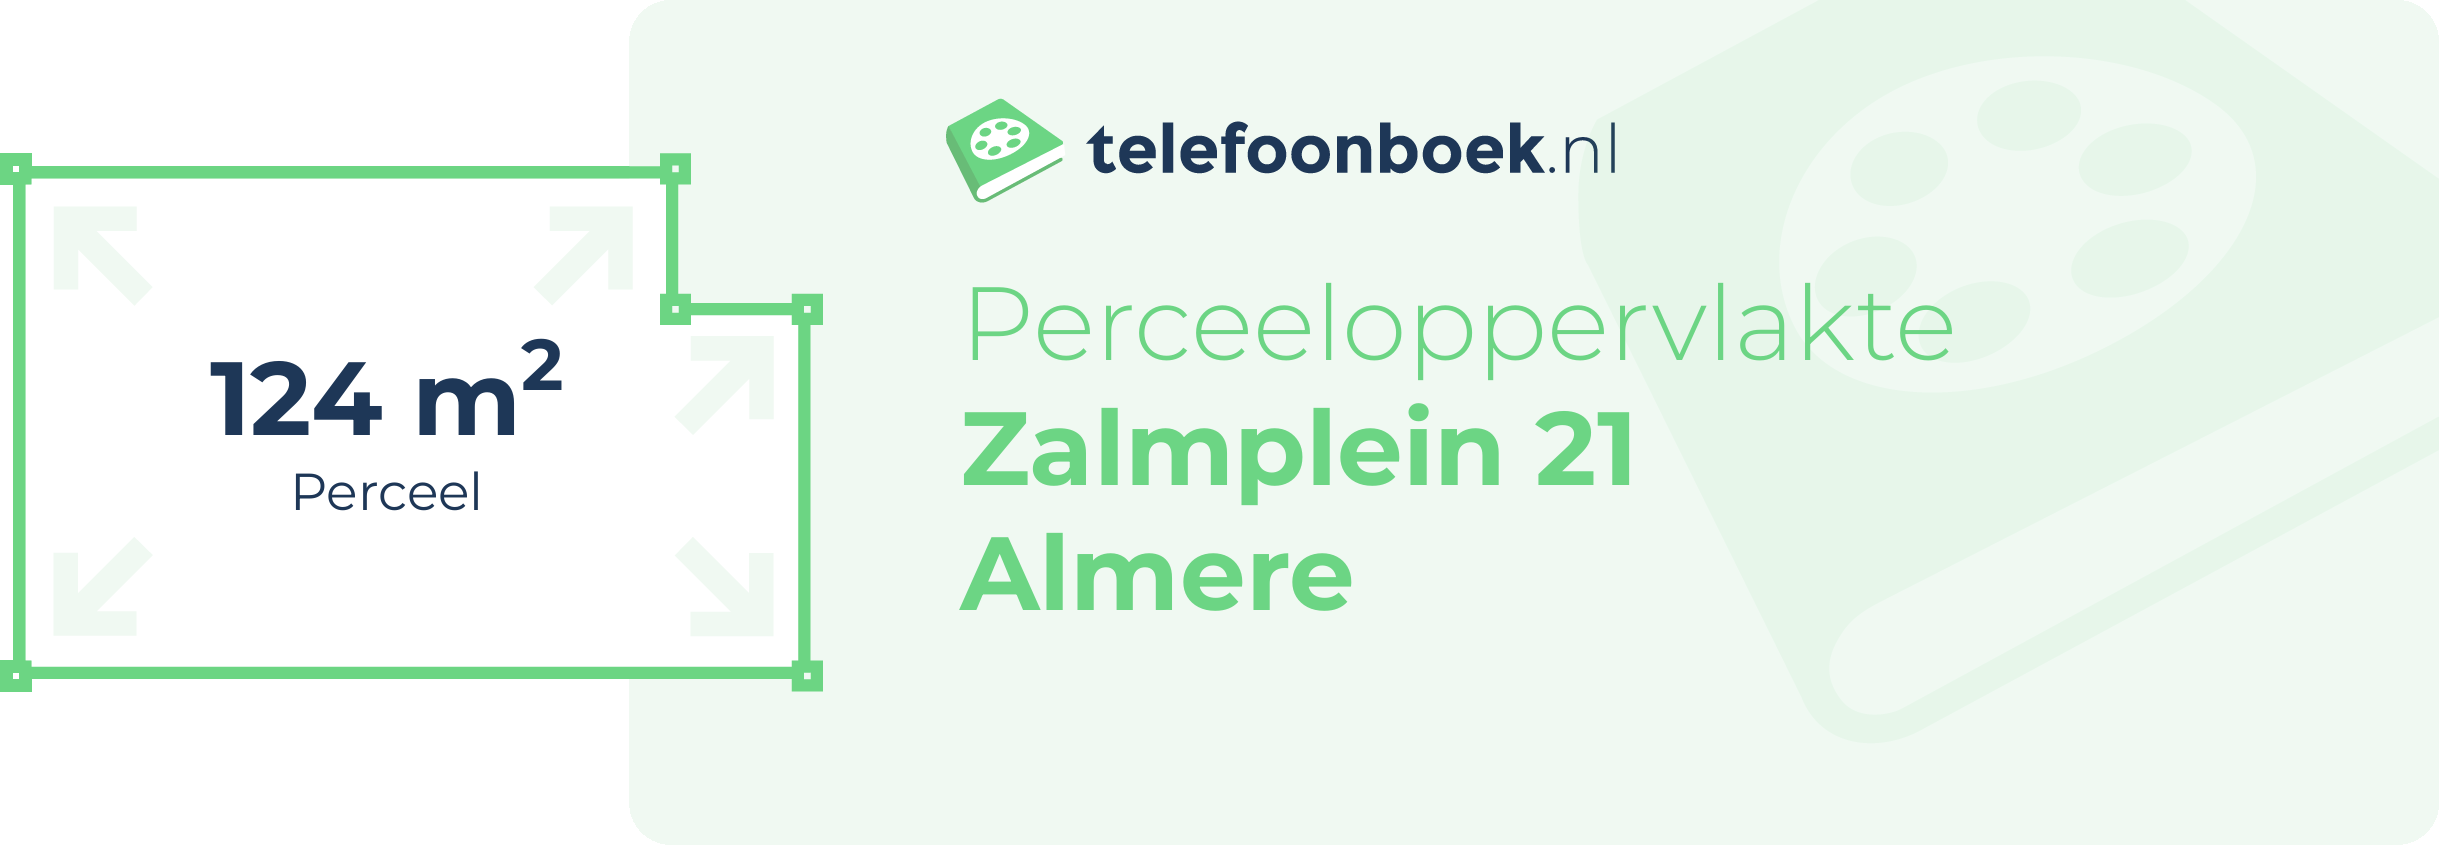 Perceeloppervlakte Zalmplein 21 Almere